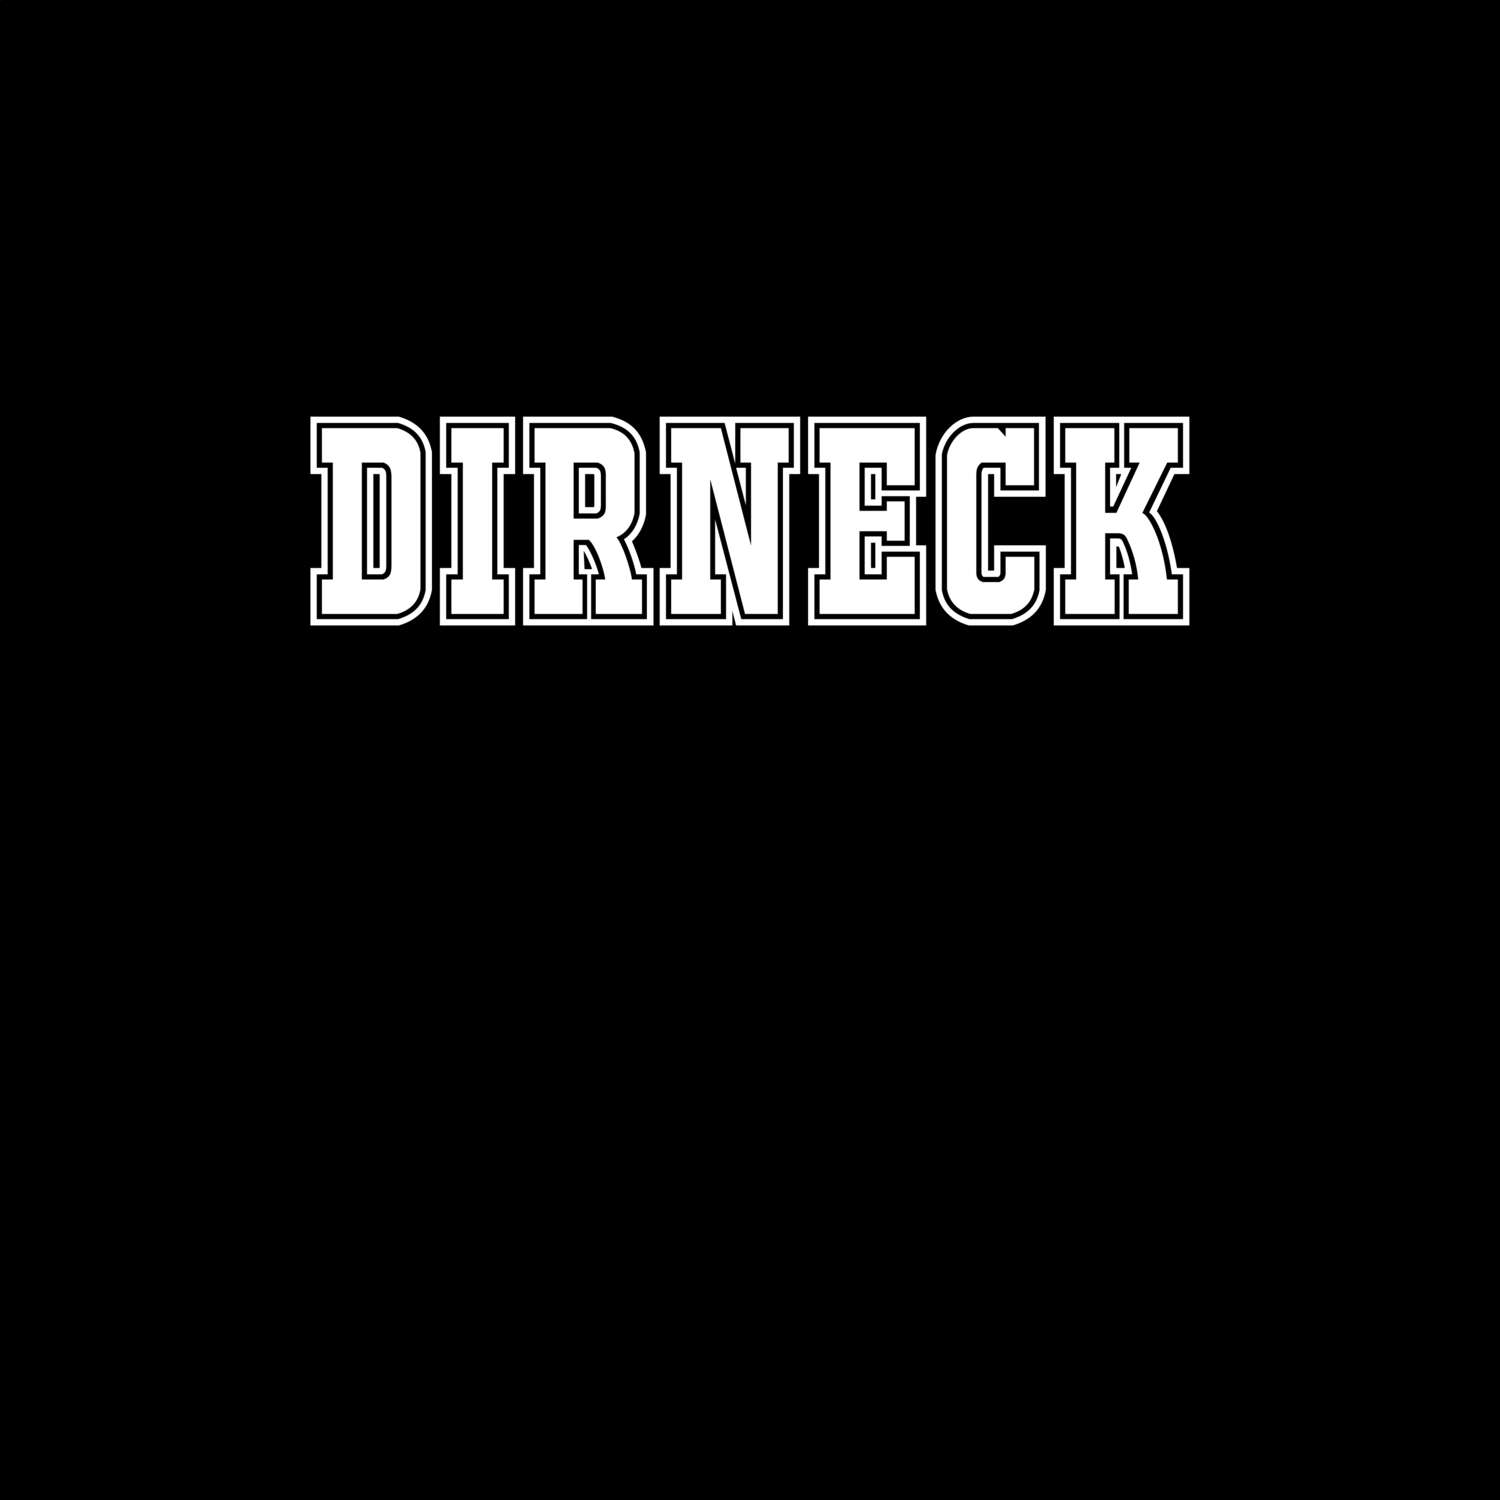 Dirneck T-Shirt »Classic«